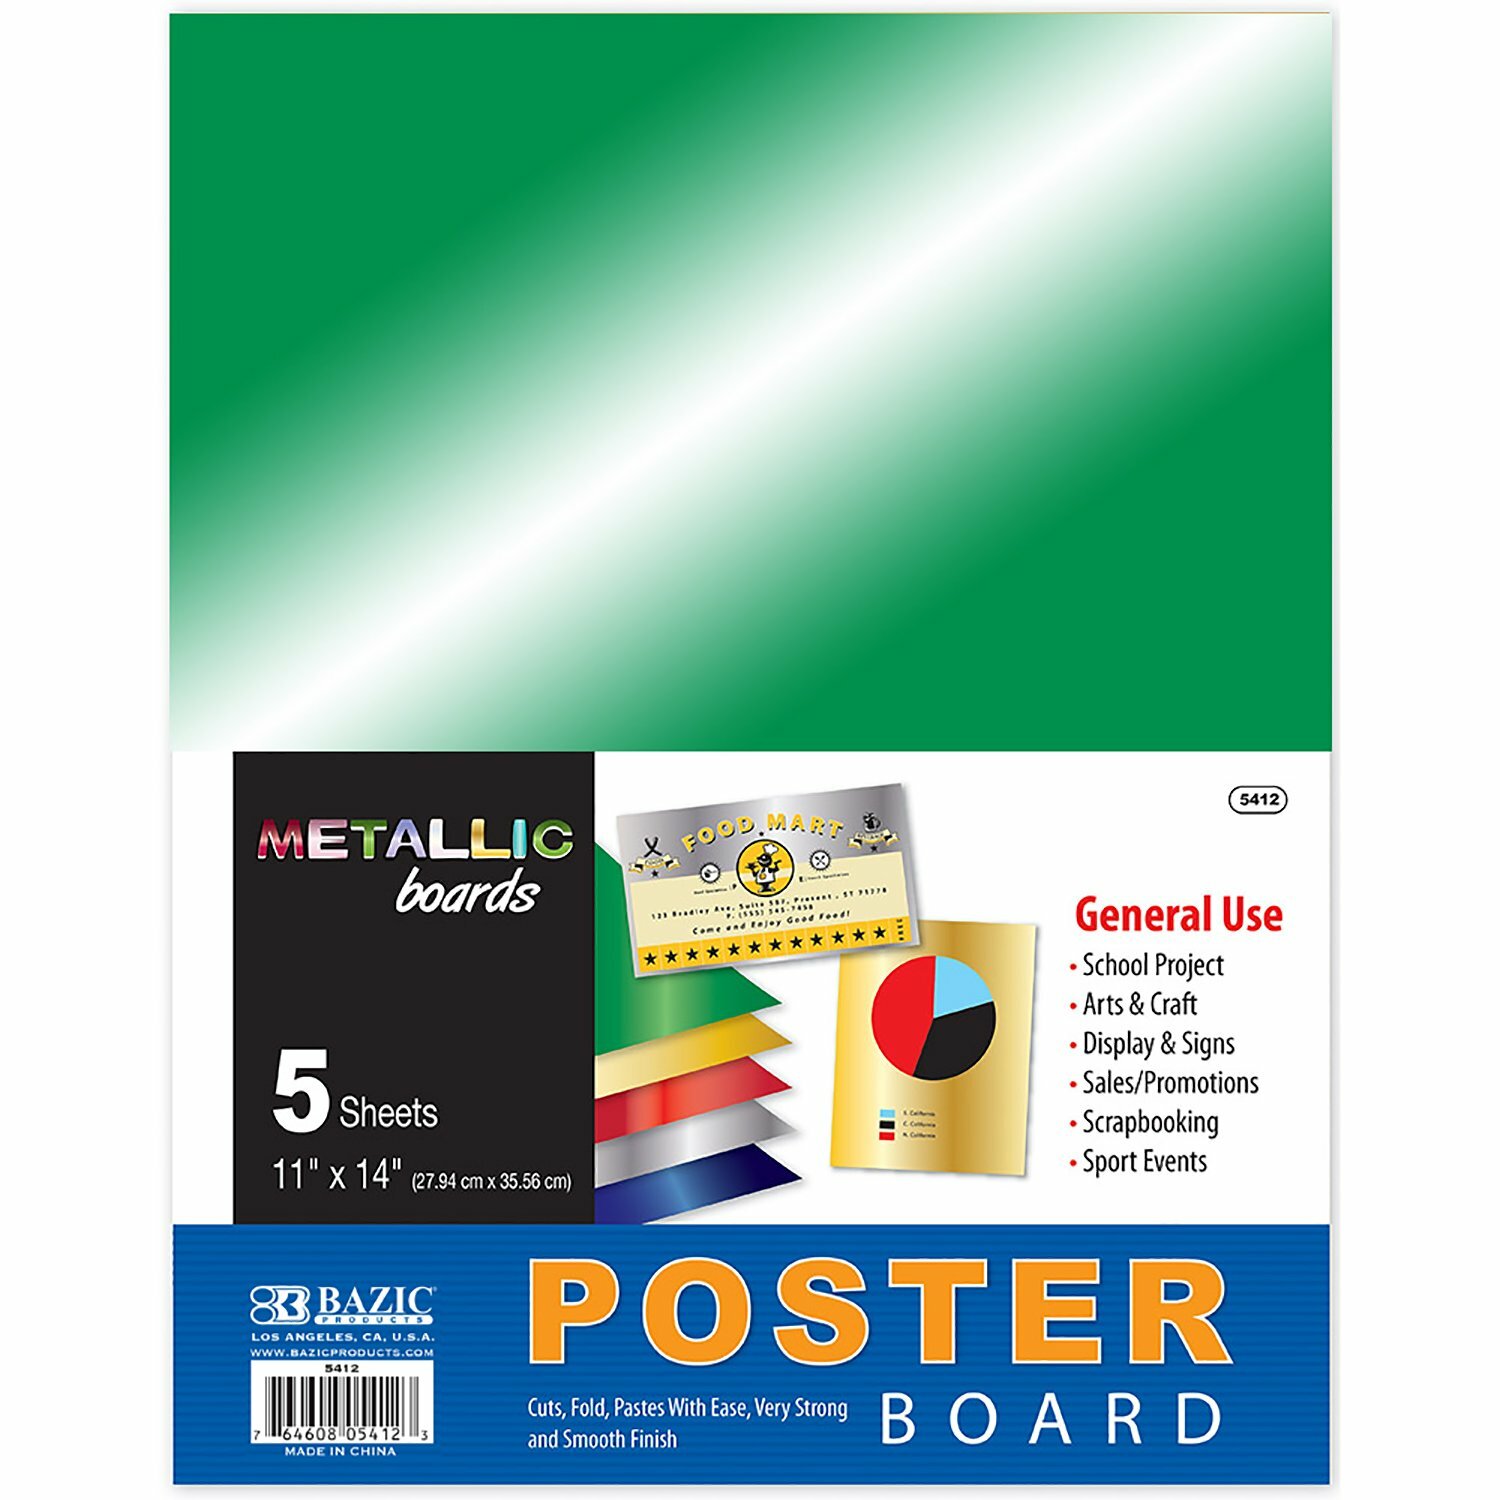 Poster Board/Metallic (IN-6) (5412)